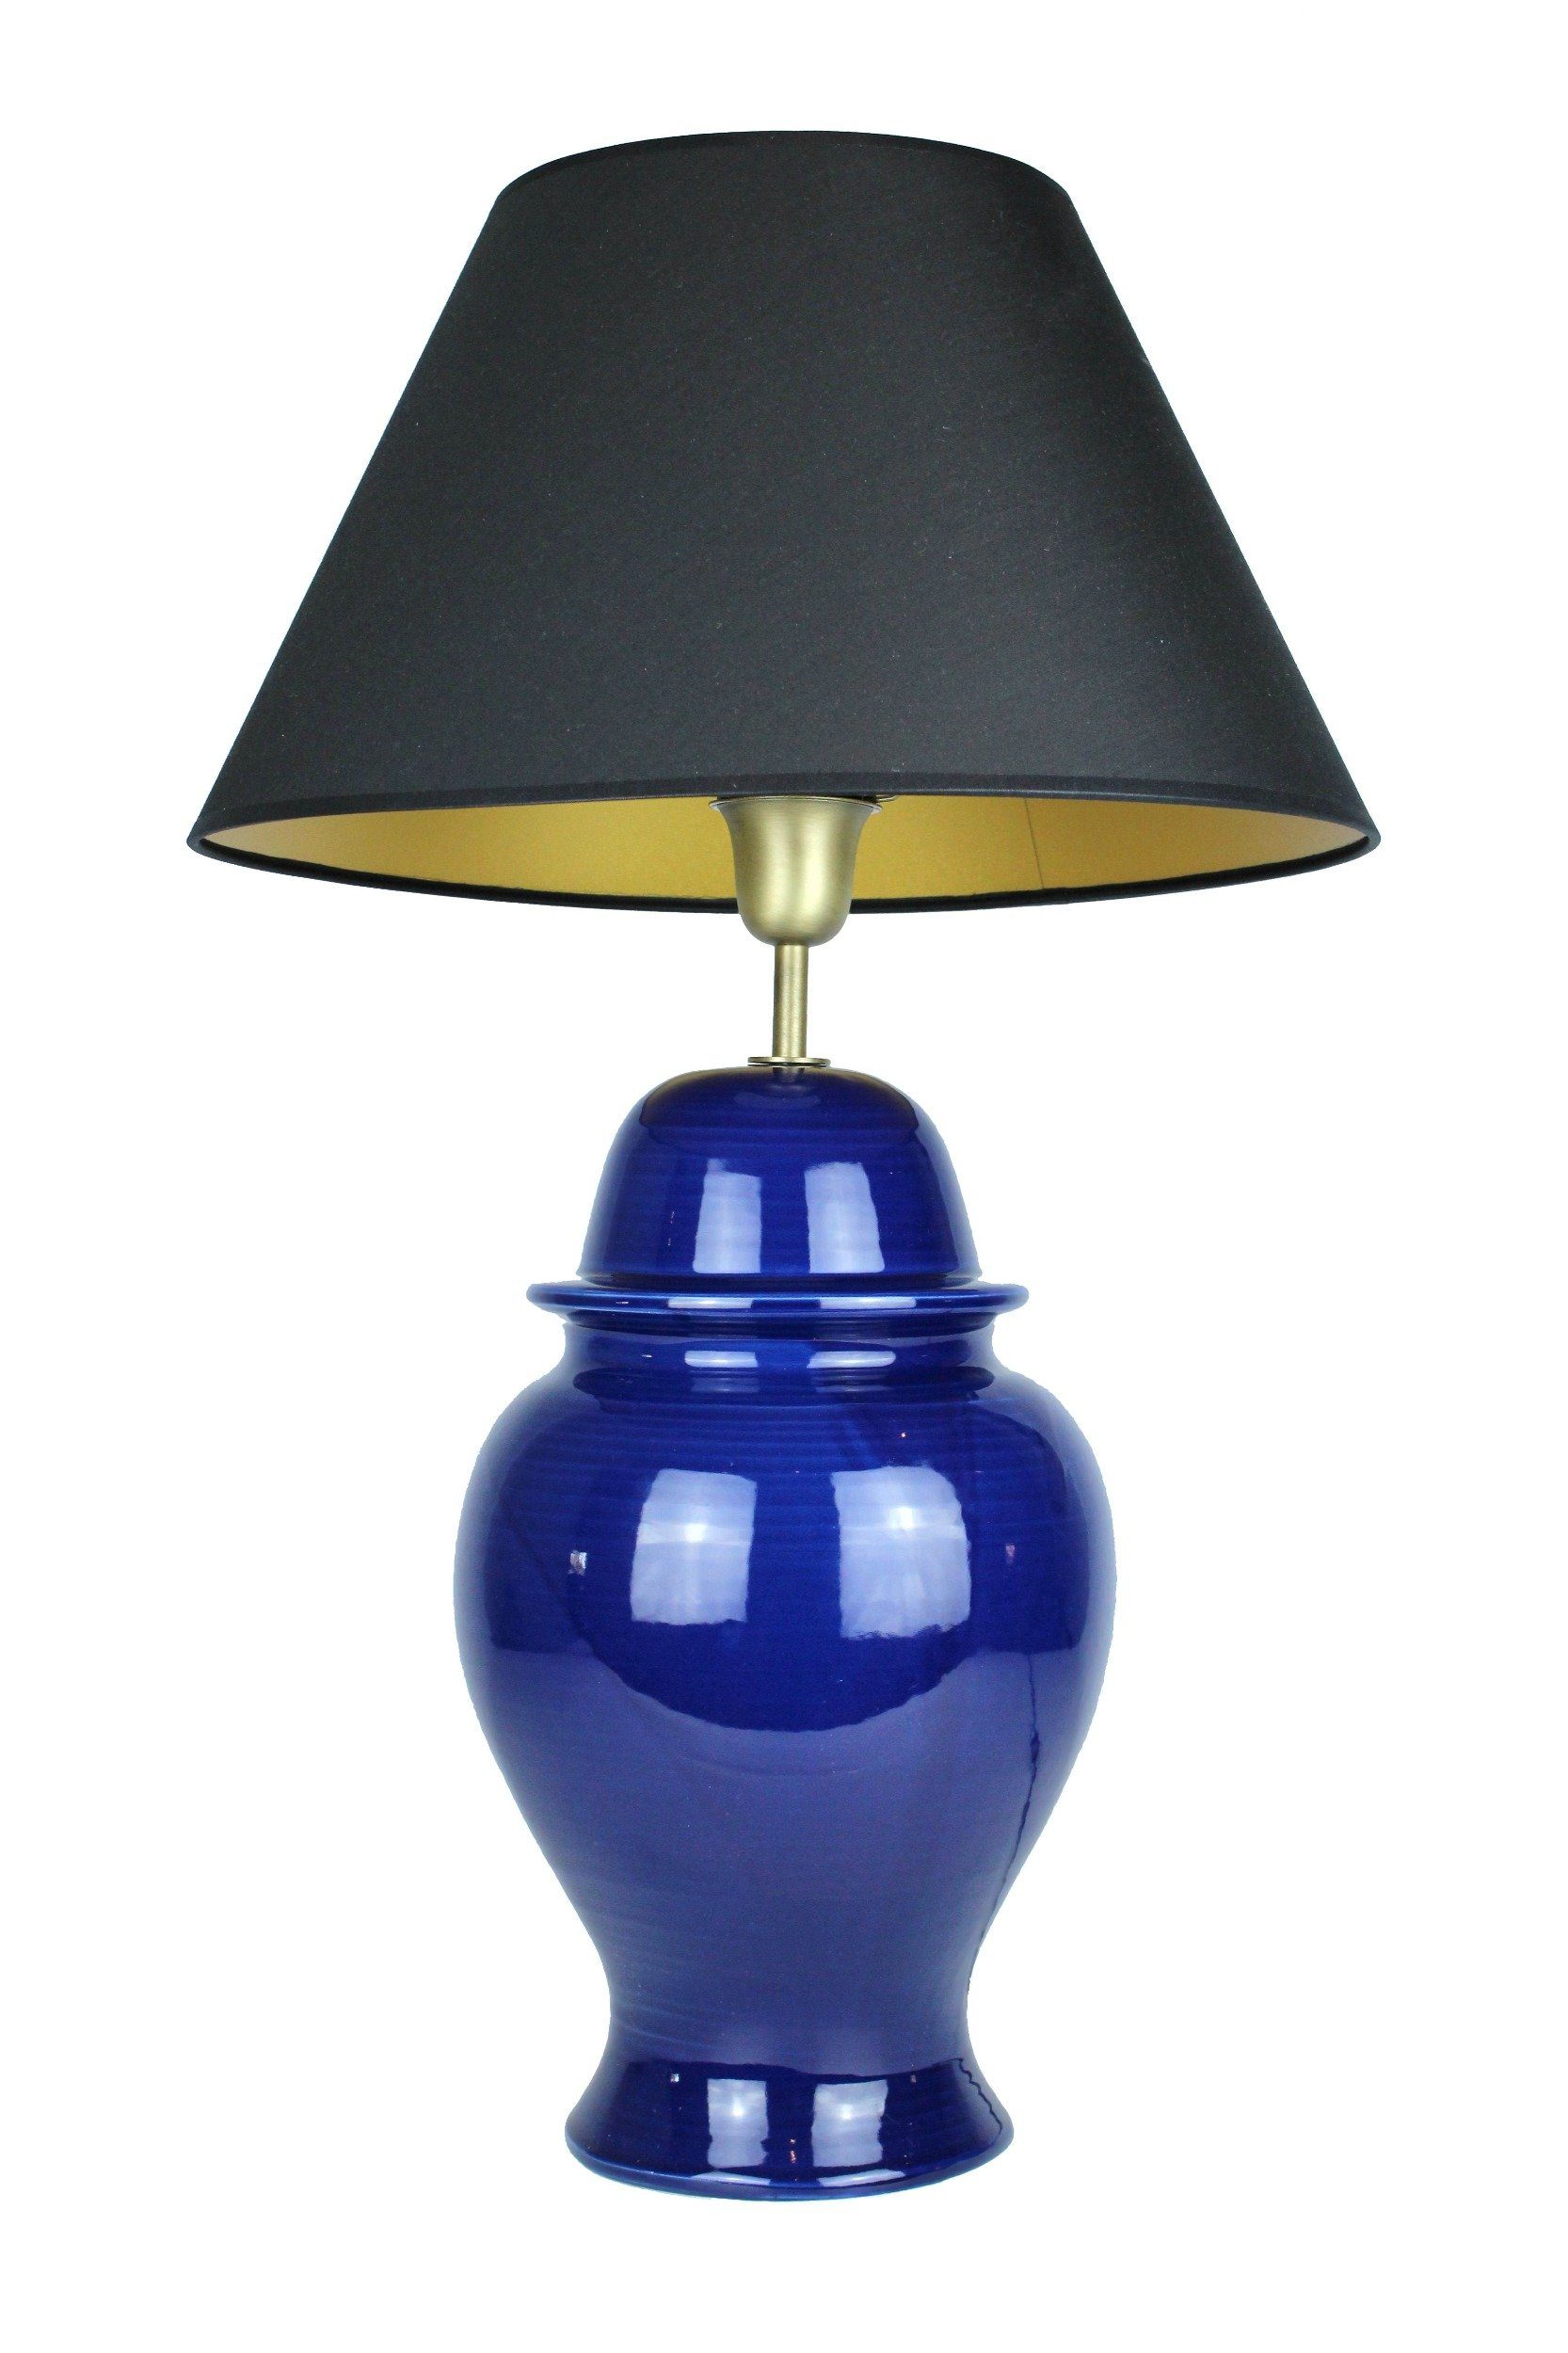 Tischlampe Keramik dunkelblau warmweiß, Leuchtmittel, Lampenschirm ohne Collection Schreibtischlampe, Home mit Signature